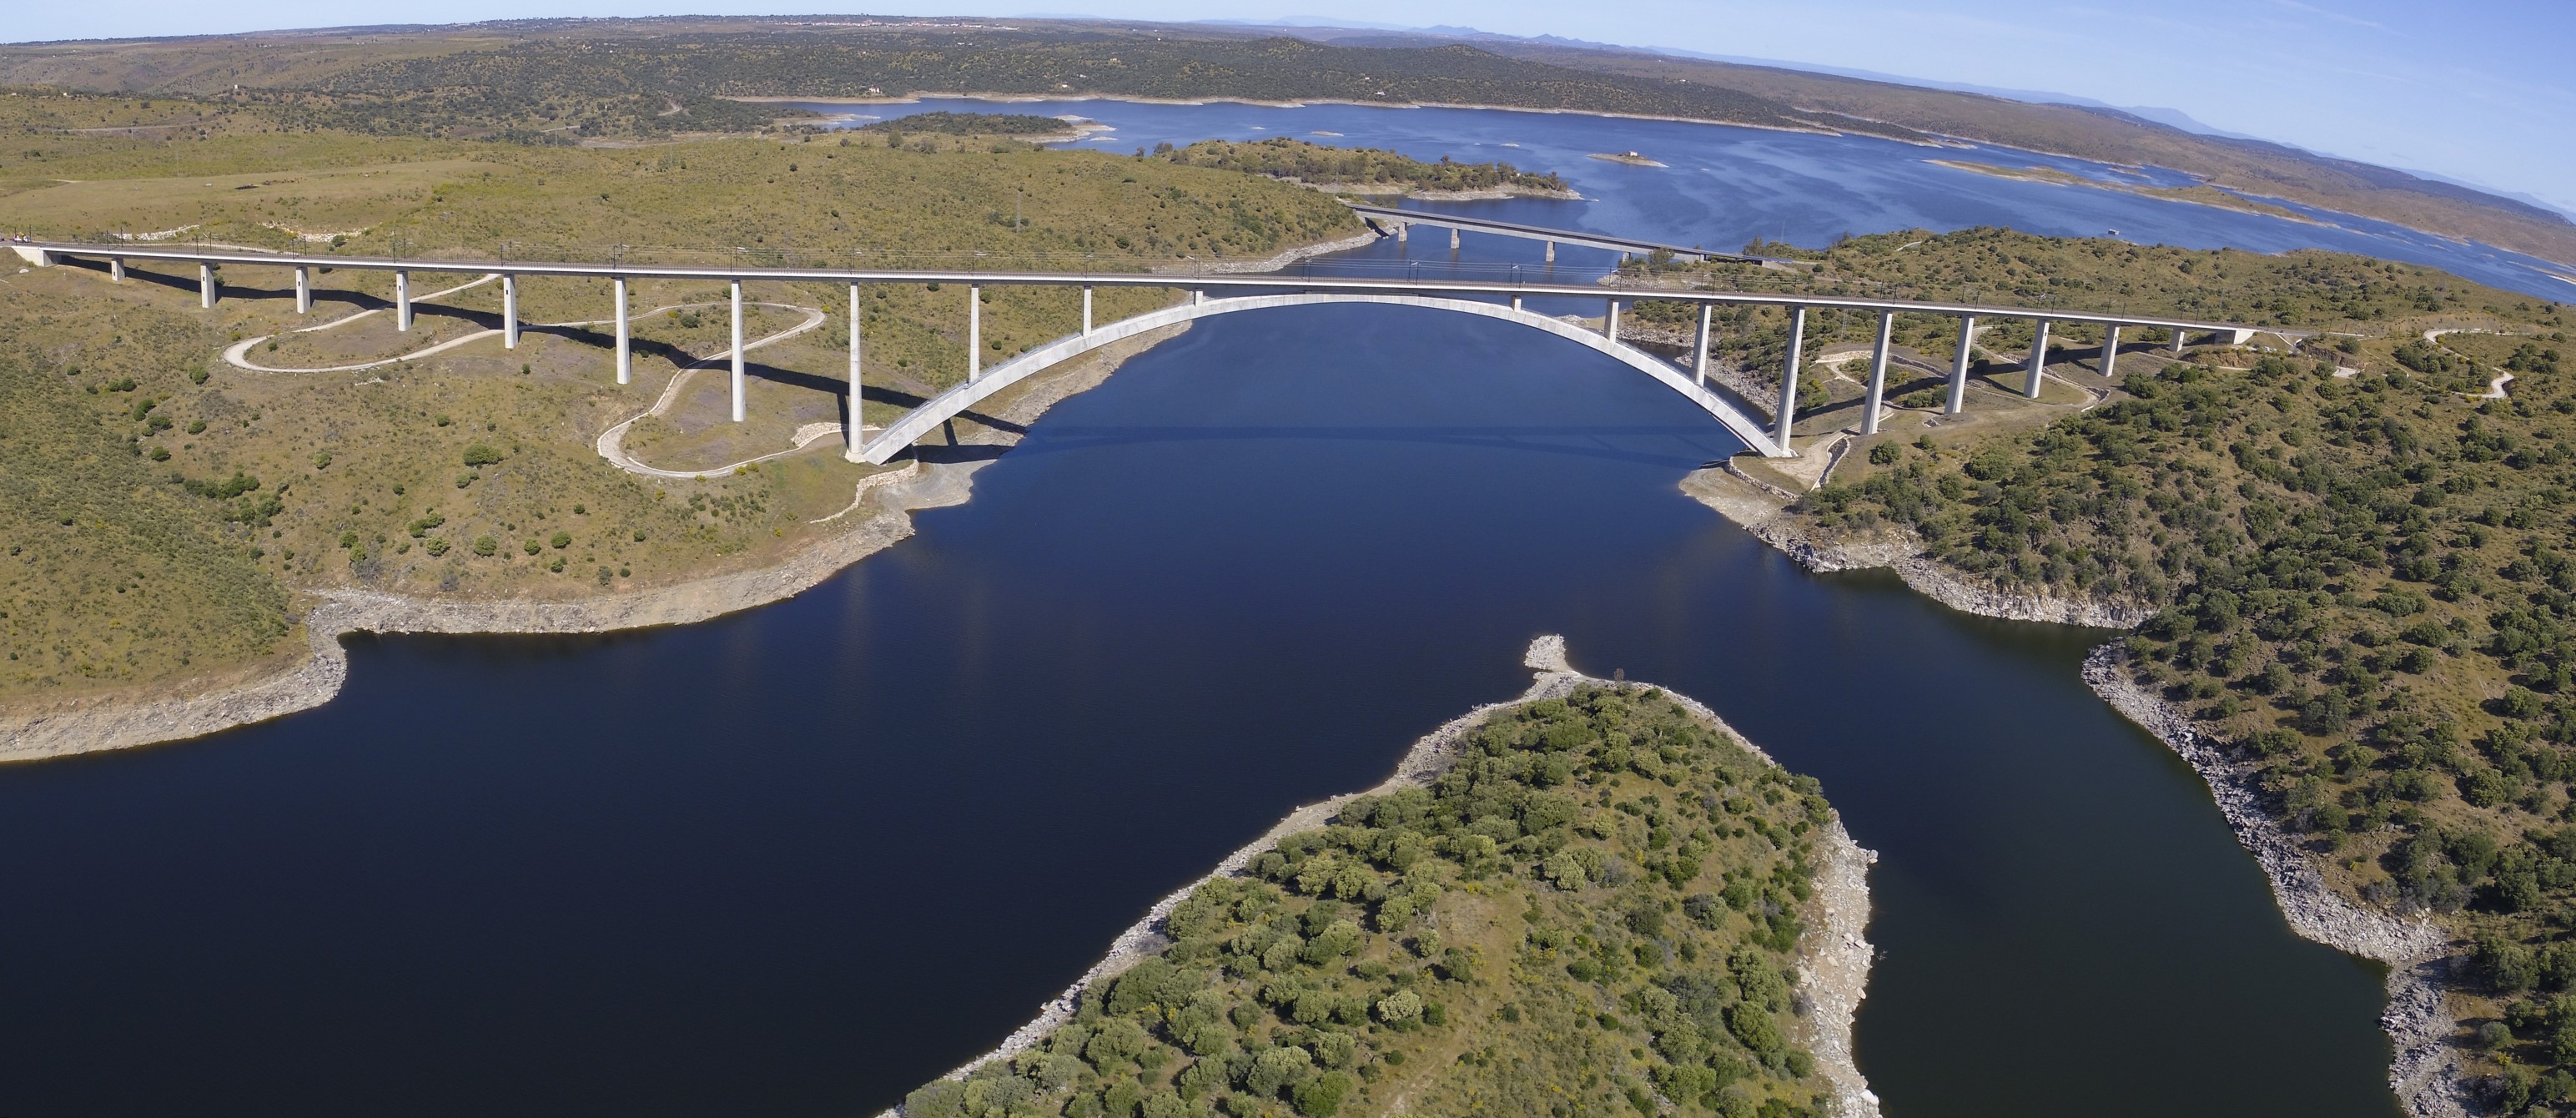 LAV Extremadura. Viaducto de Almonte. Panorámica desde dron. Mayo de 2021. Foto: José David Pacheco.